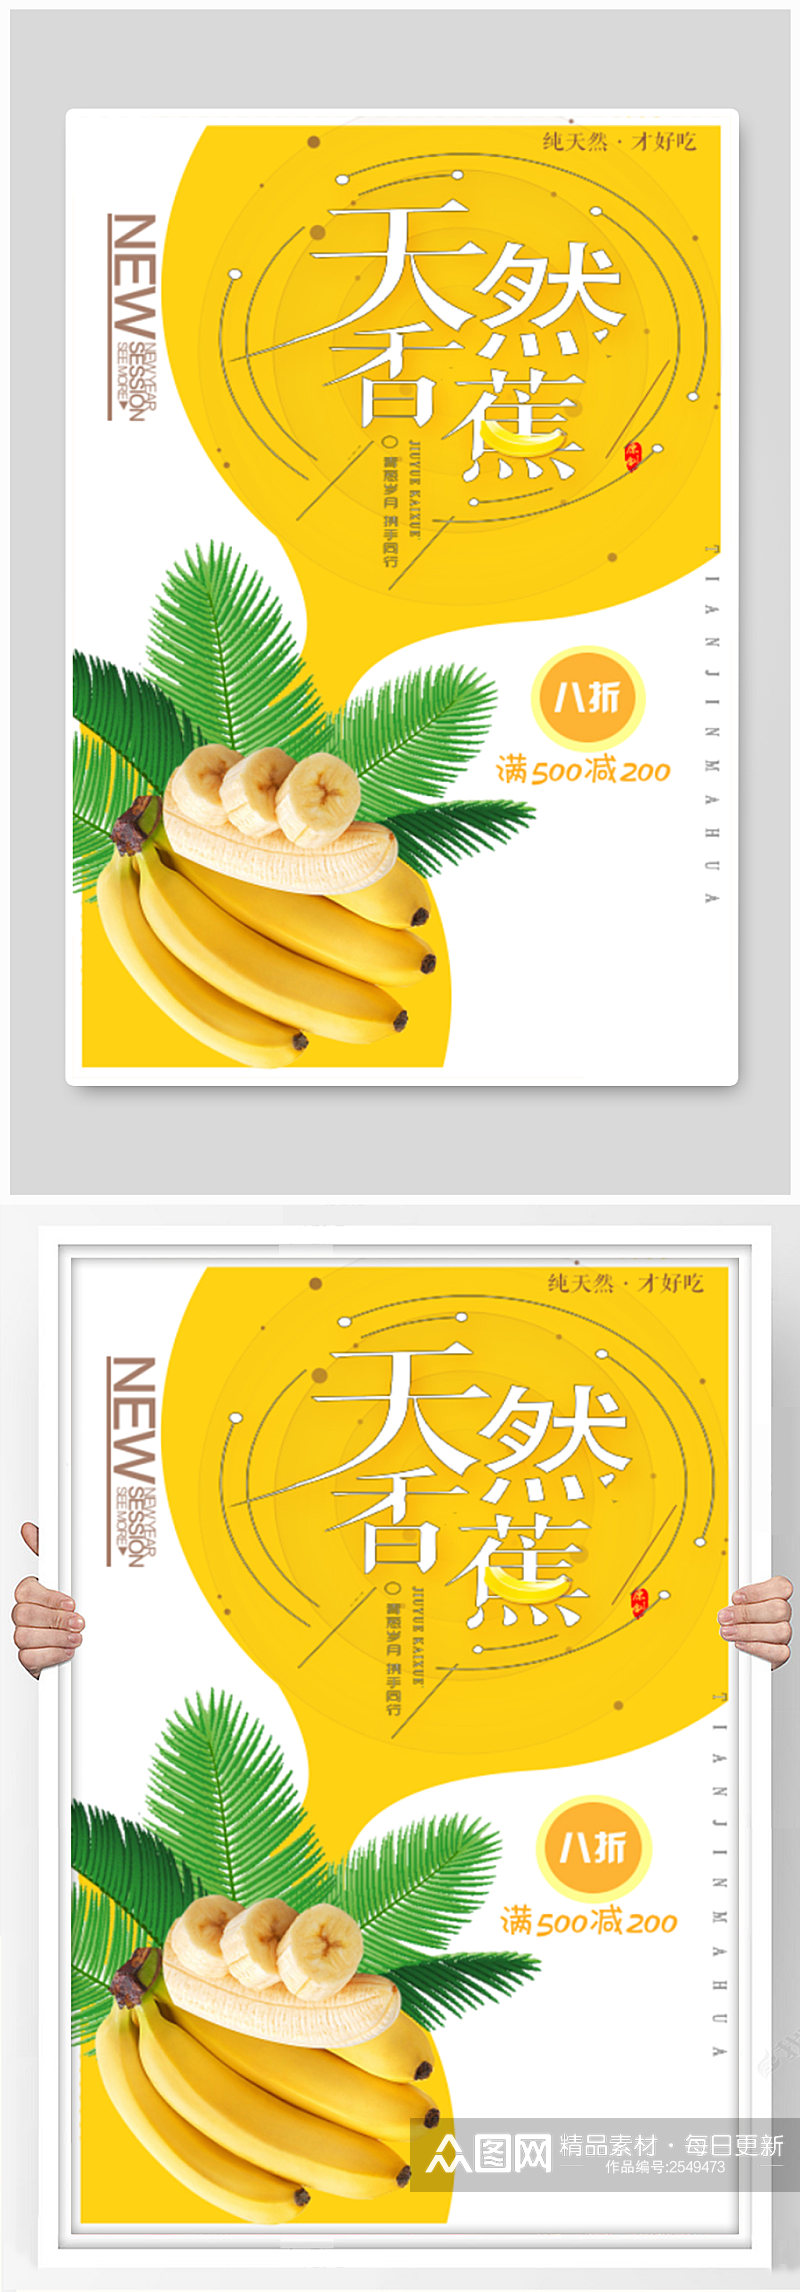 天然香蕉宣传海报素材